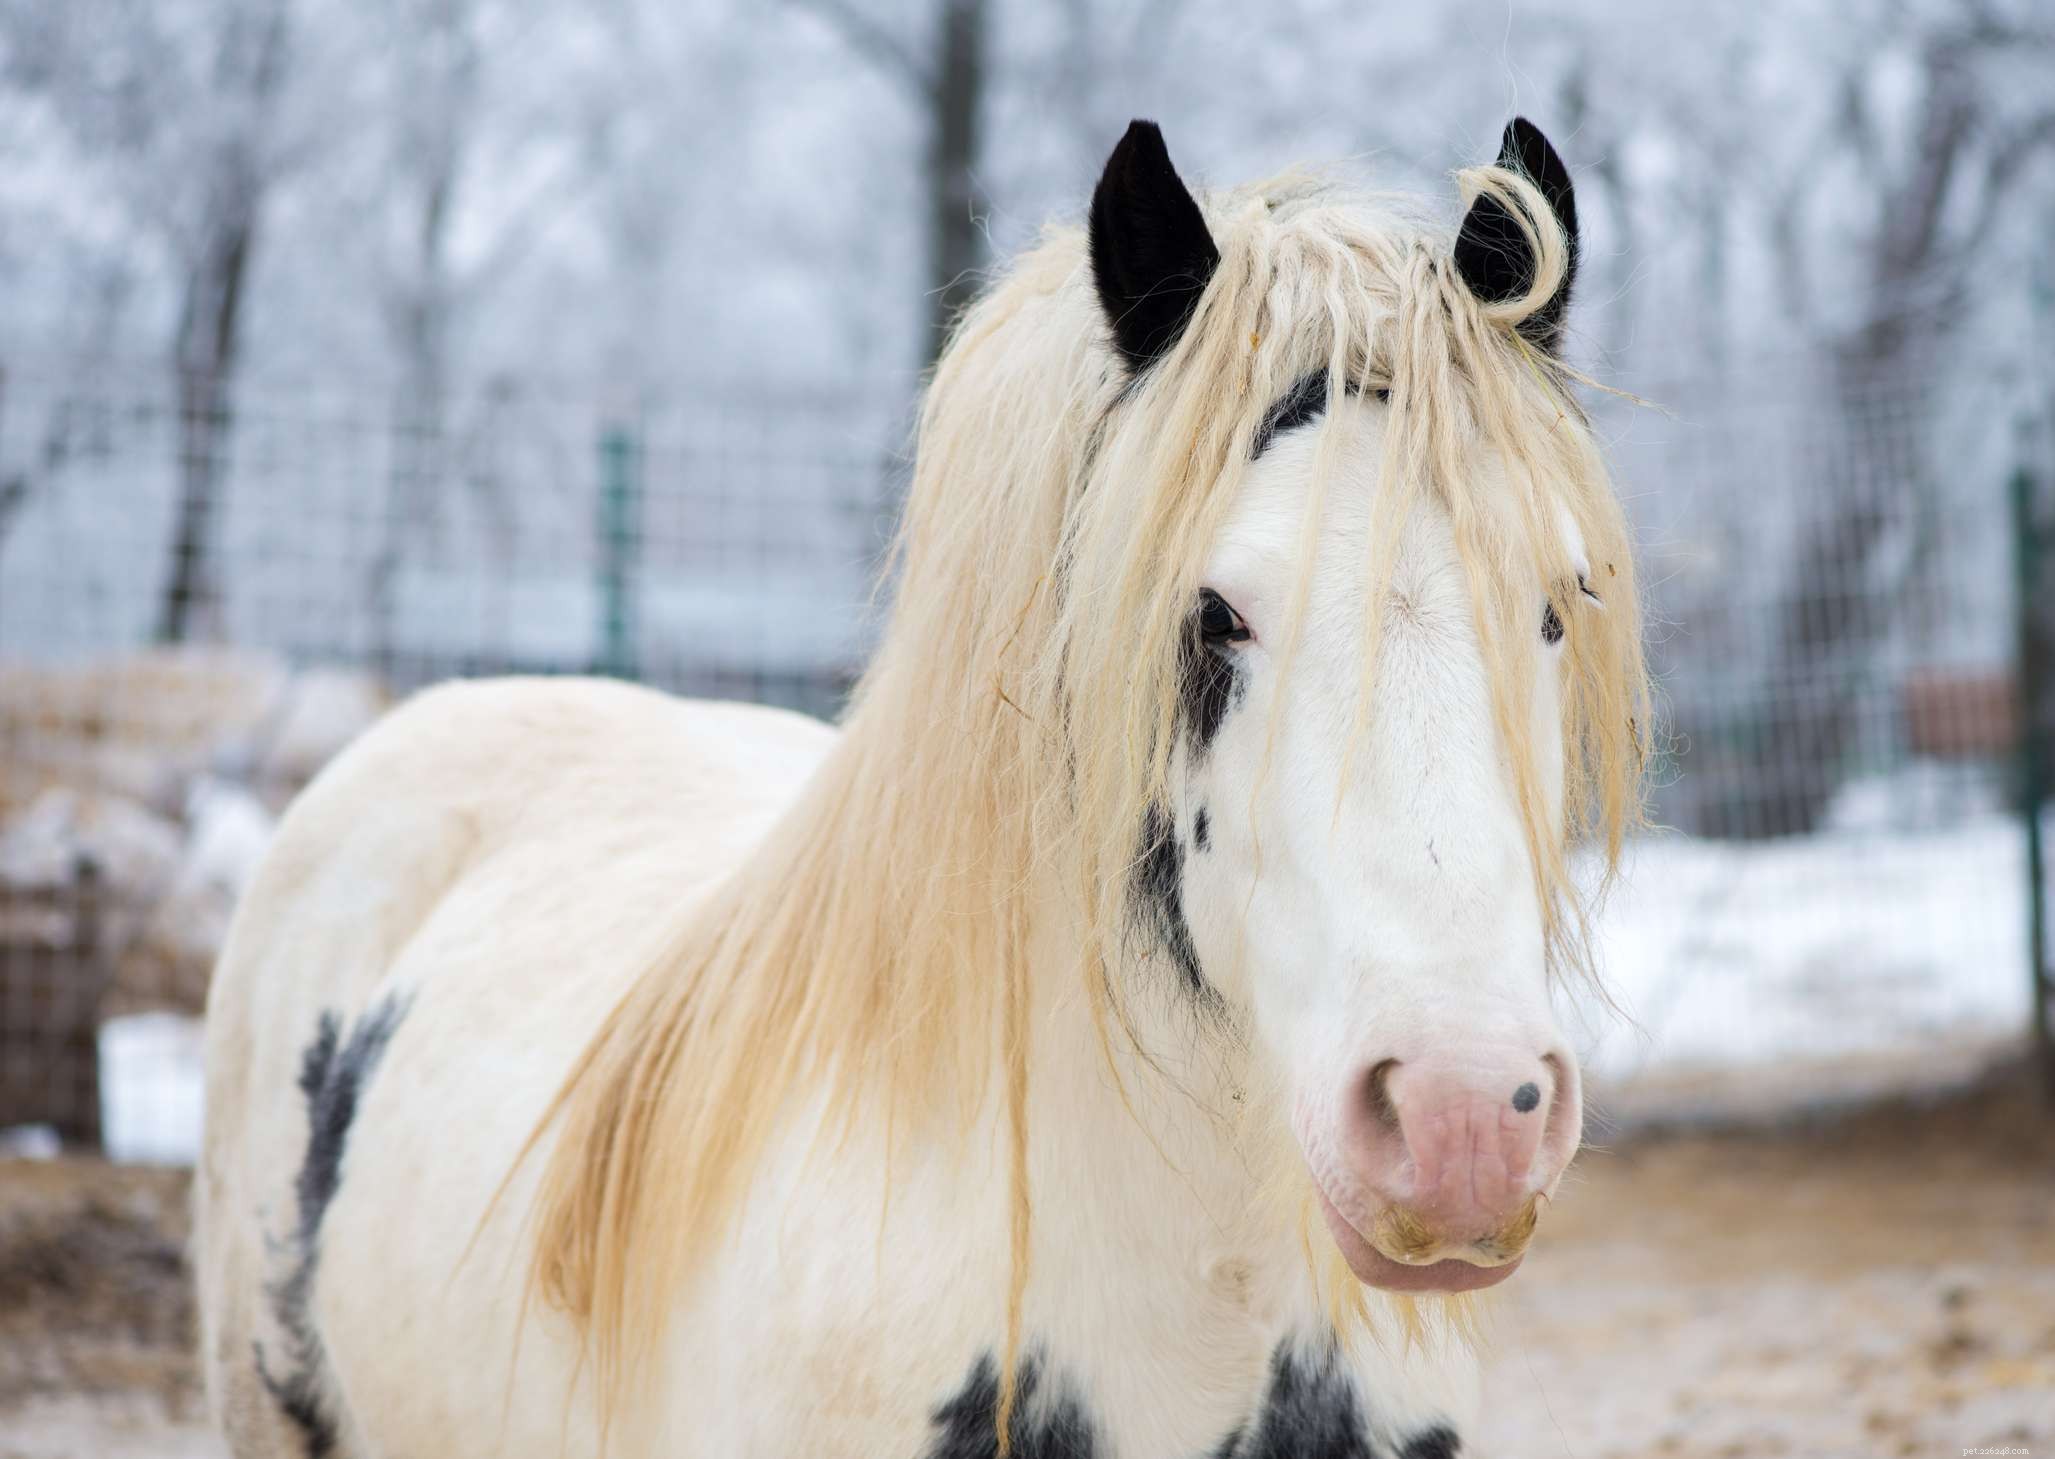 Gypsy Vanner:Profil plemene koně